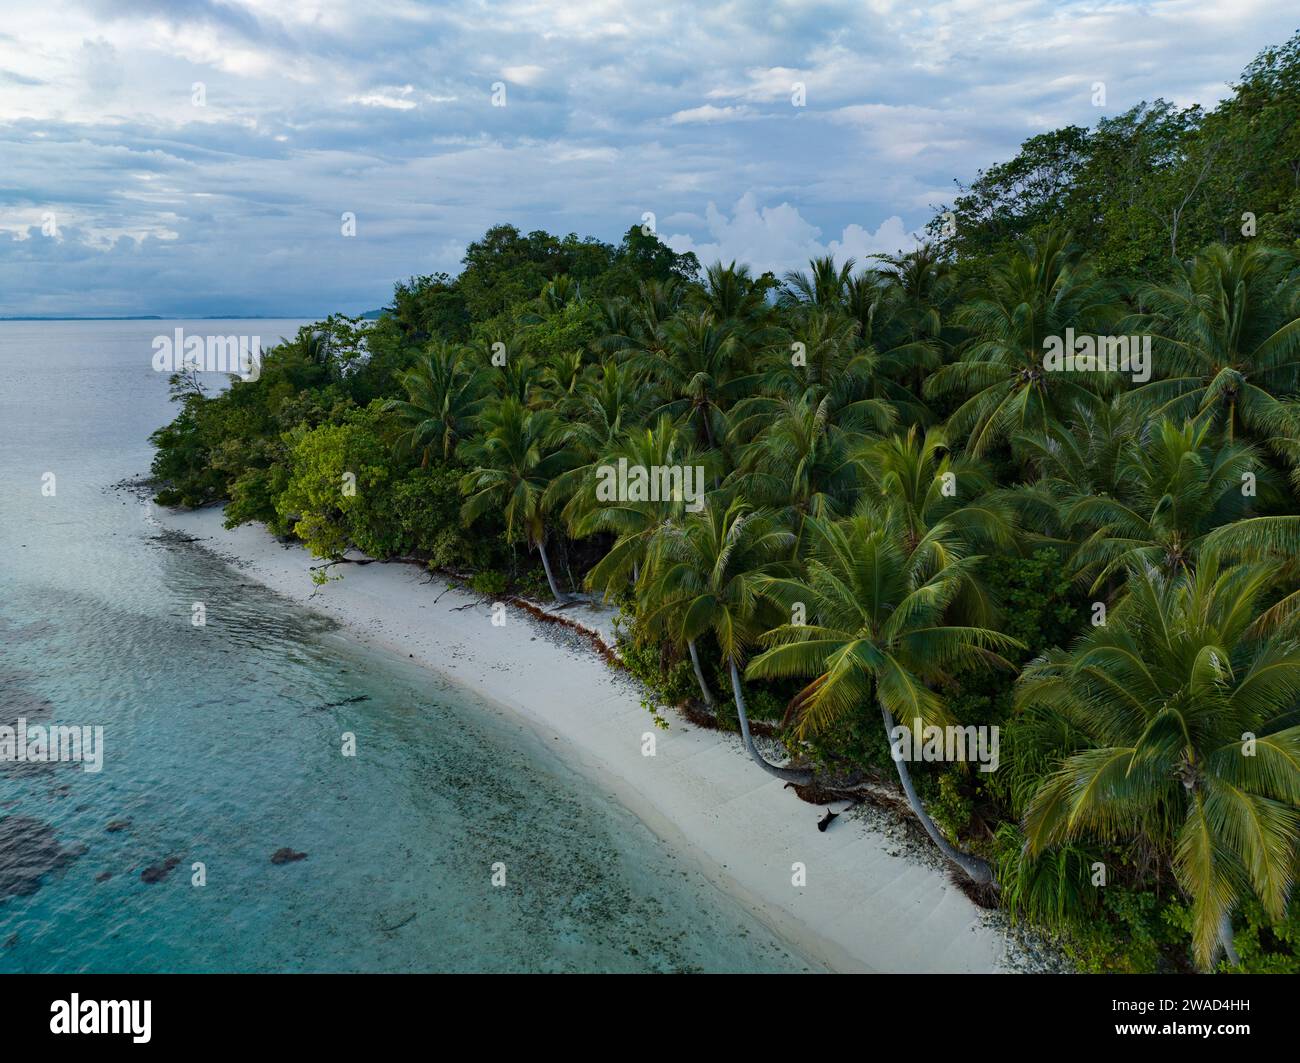 Una magnifica spiaggia è circondata da palme da cocco a Raja Ampat, Indonesia. Questa remota regione tropicale è conosciuta per le sue squisite barriere coralline. Foto Stock